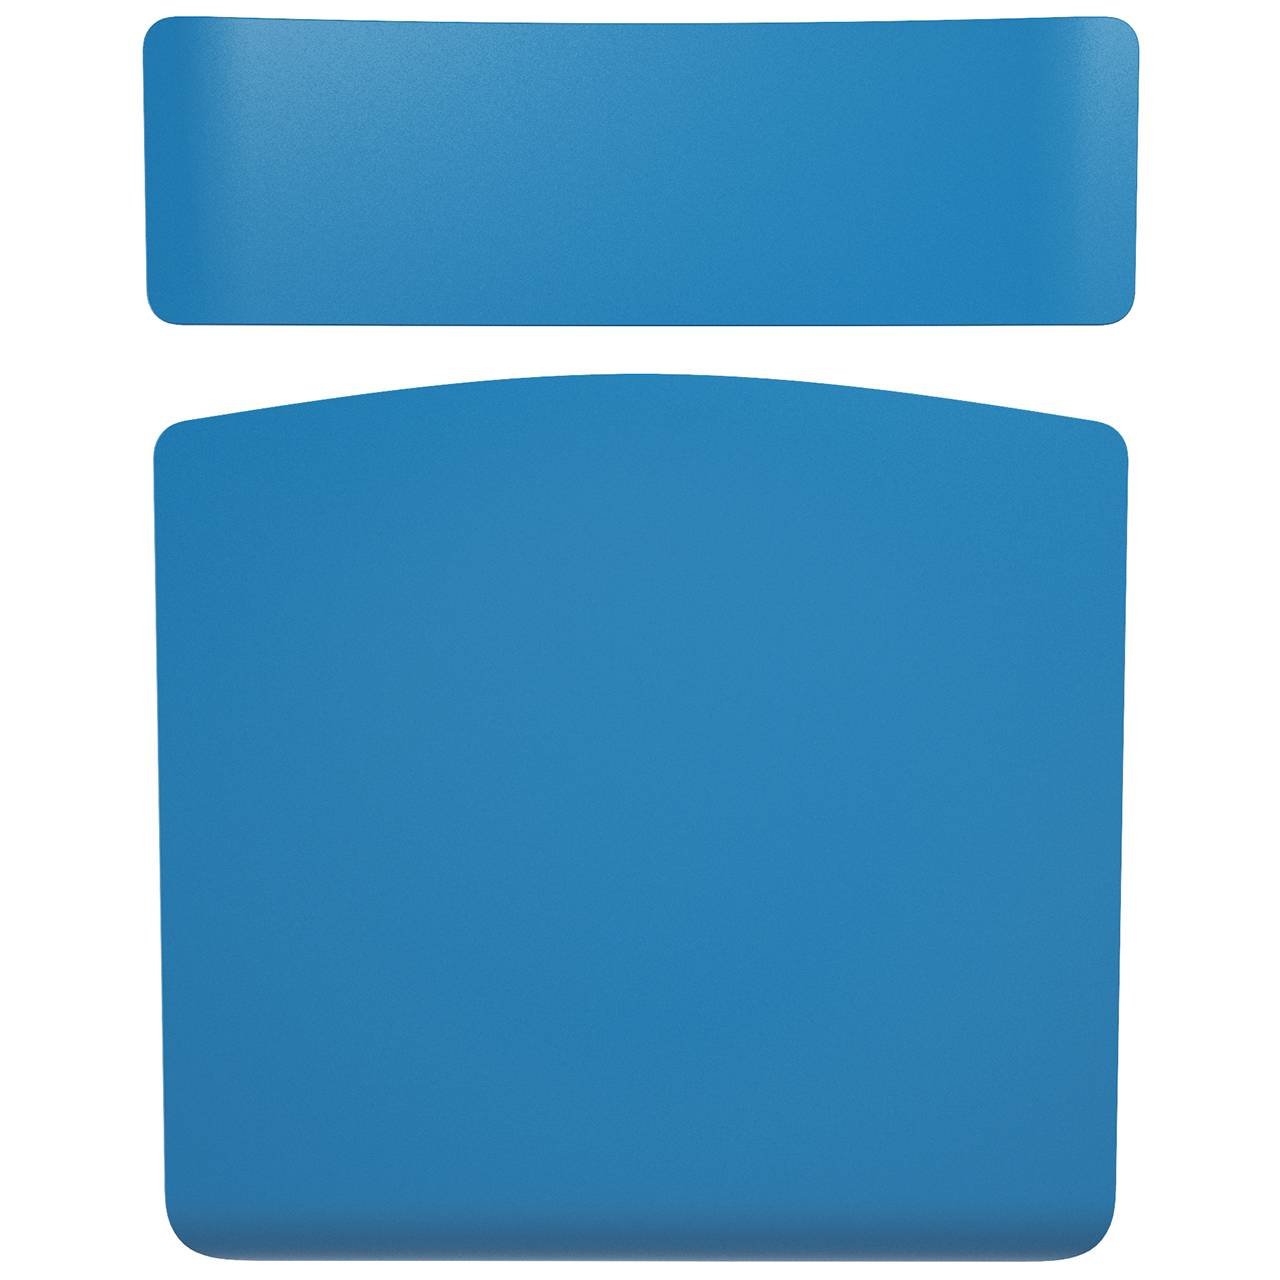 Стул ученический регулируемый (гр. 2-4, 3-5, 4-6 или 5-7) серый Синий 5-7 прямоугольная